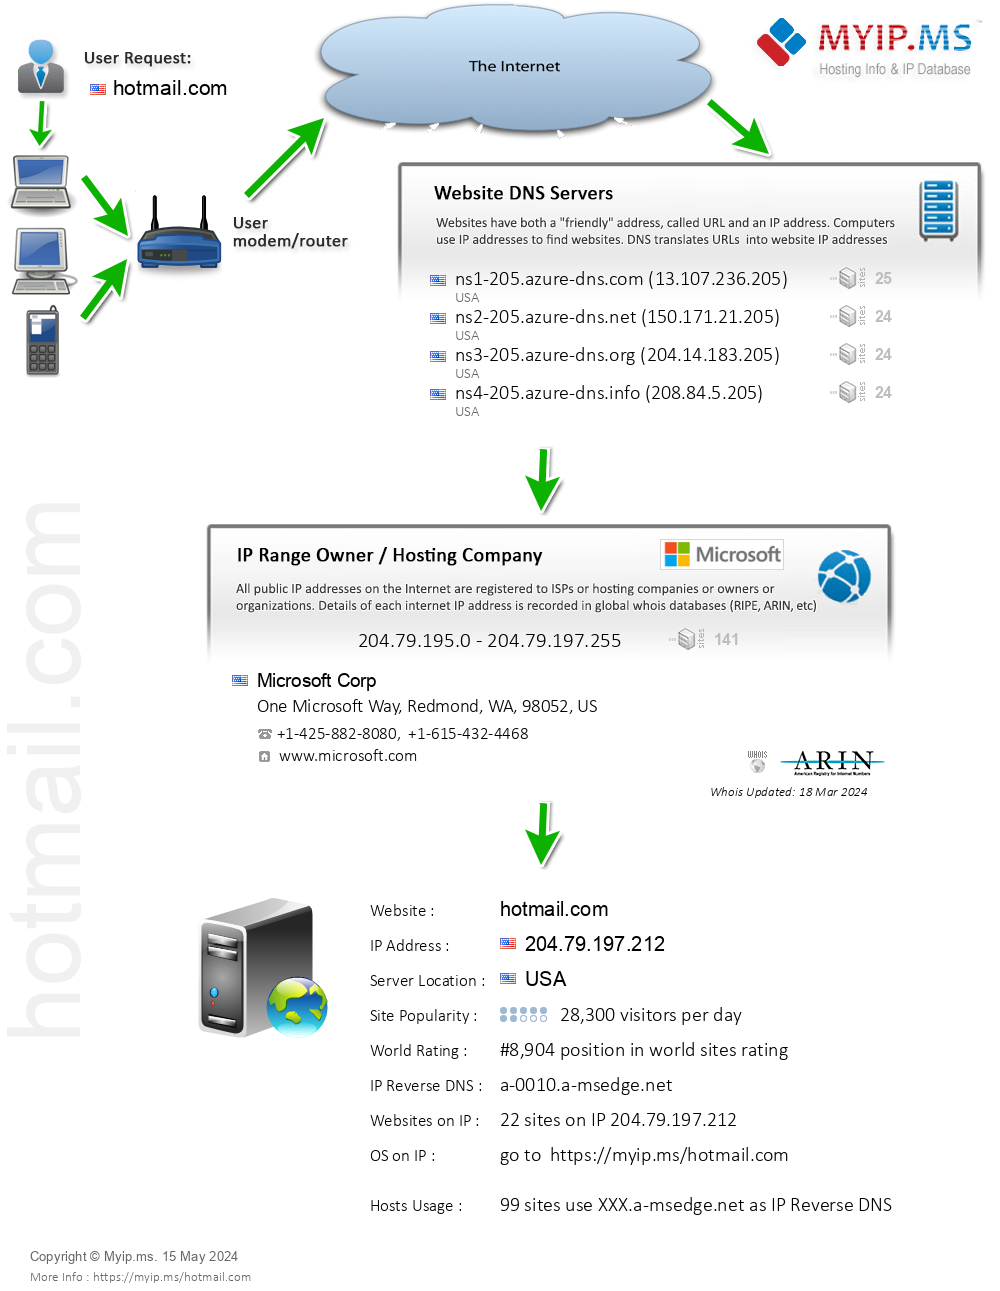 Hotmail.com - Website Hosting Visual IP Diagram